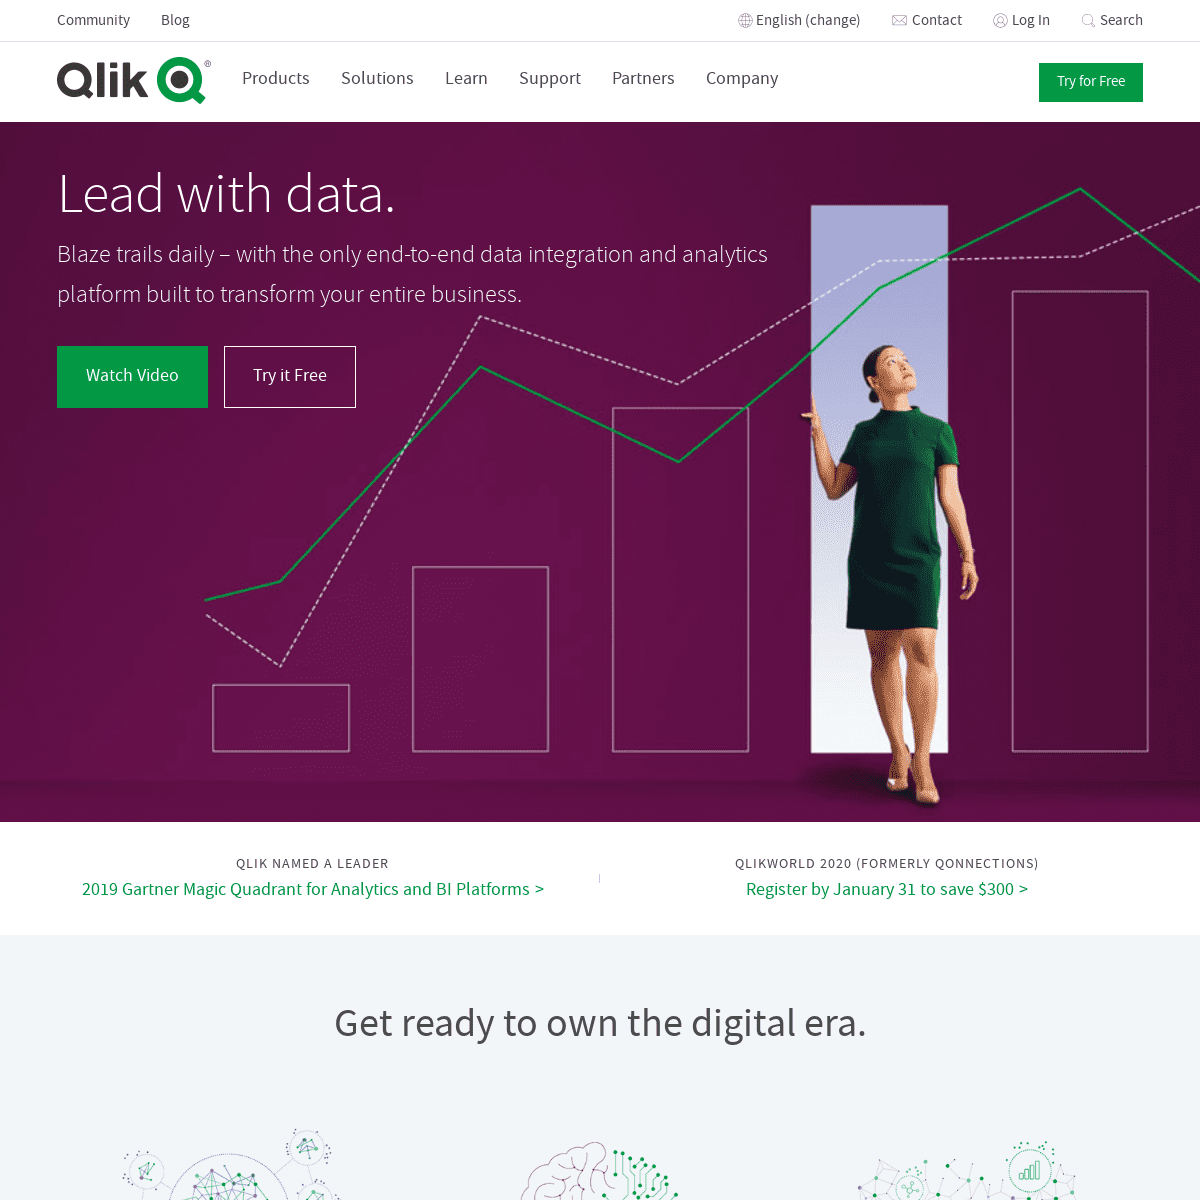 A complete backup of qlik.com